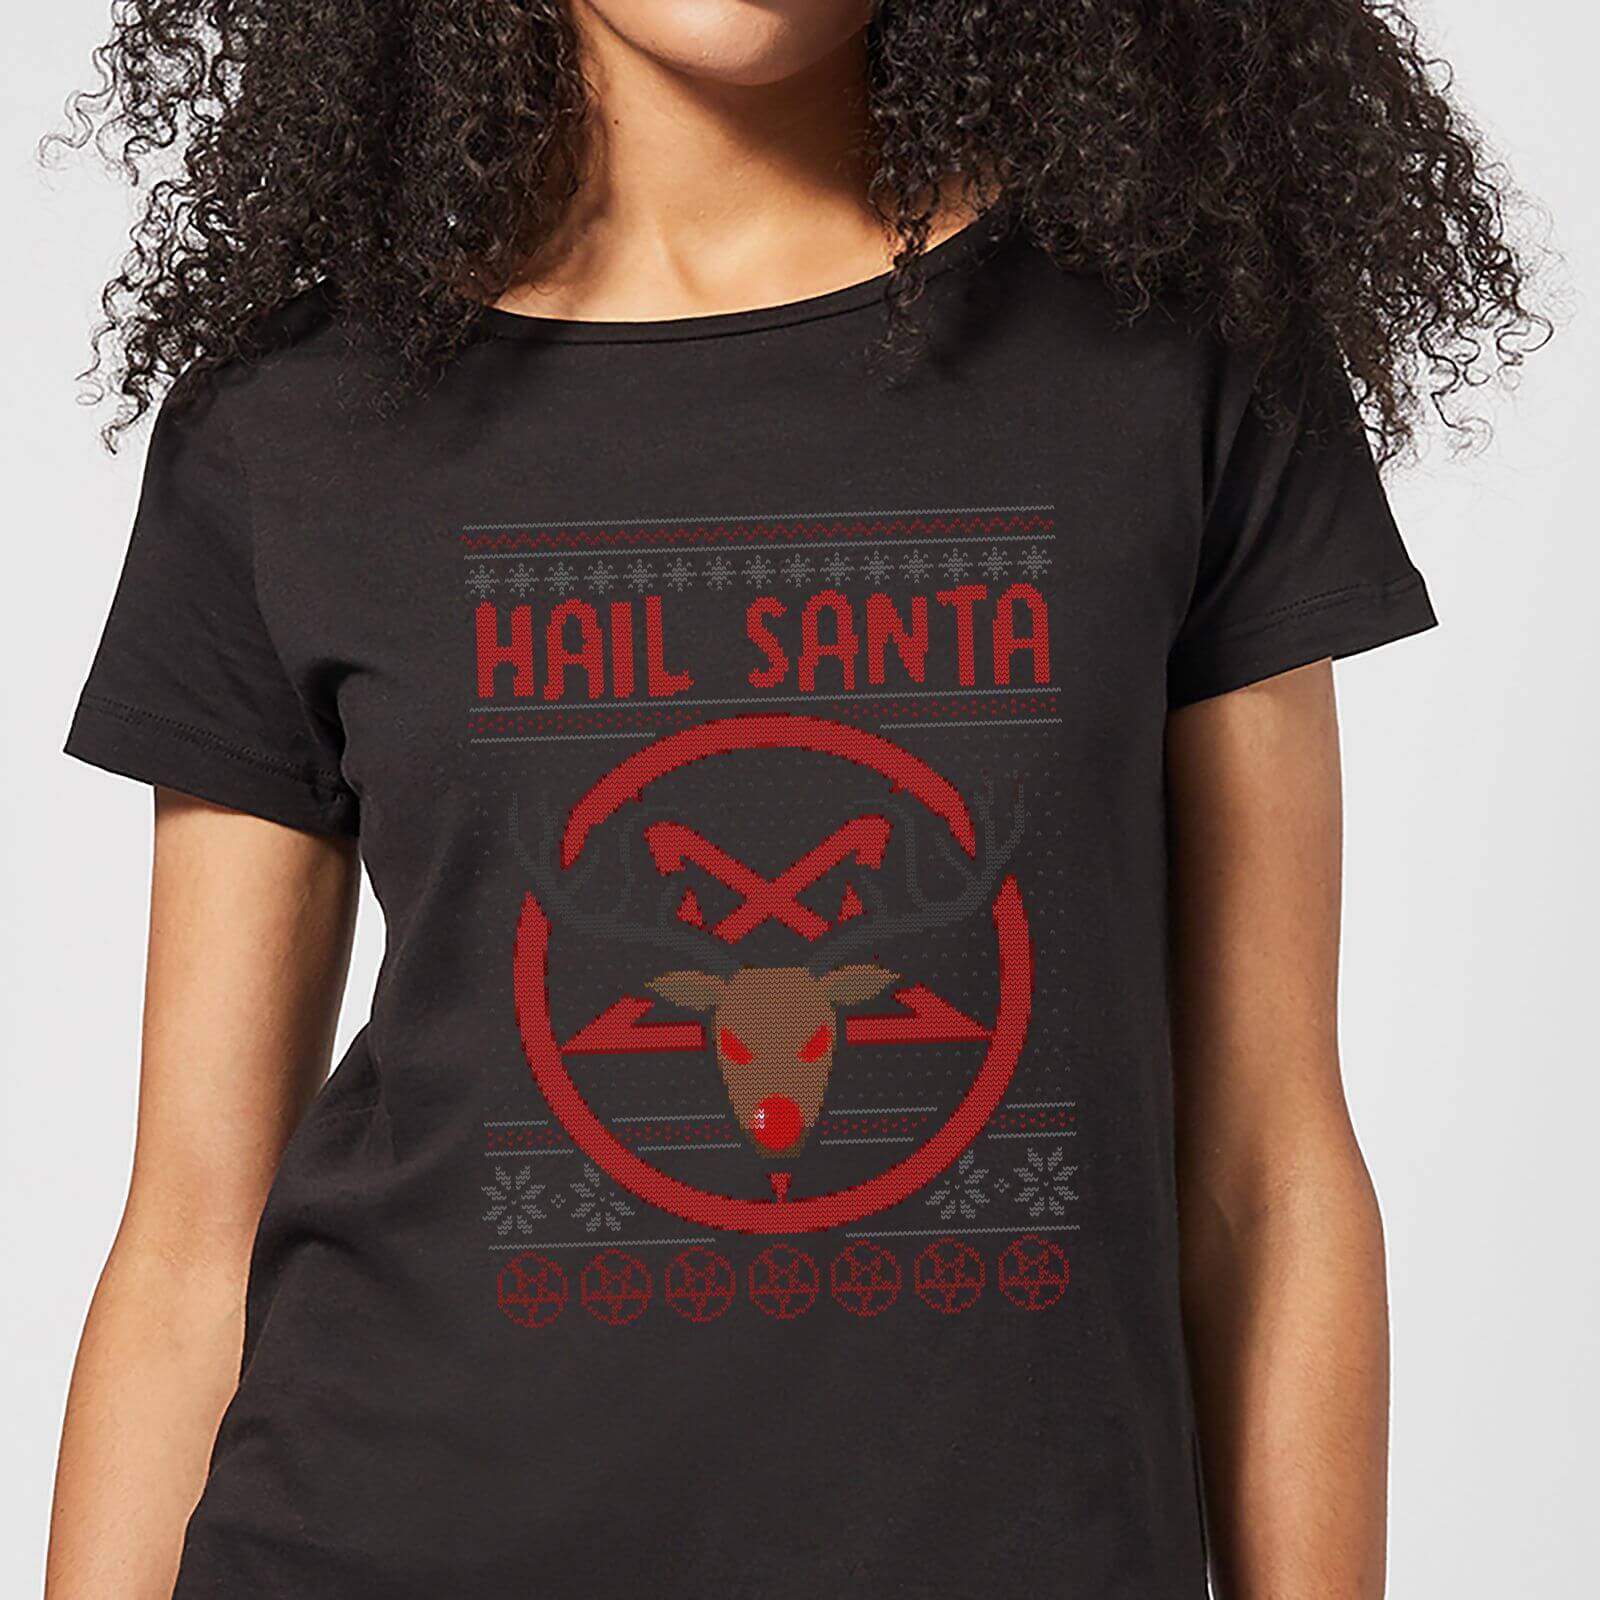 Hail Santa Women's T-Shirt - Black - 3XL - Black